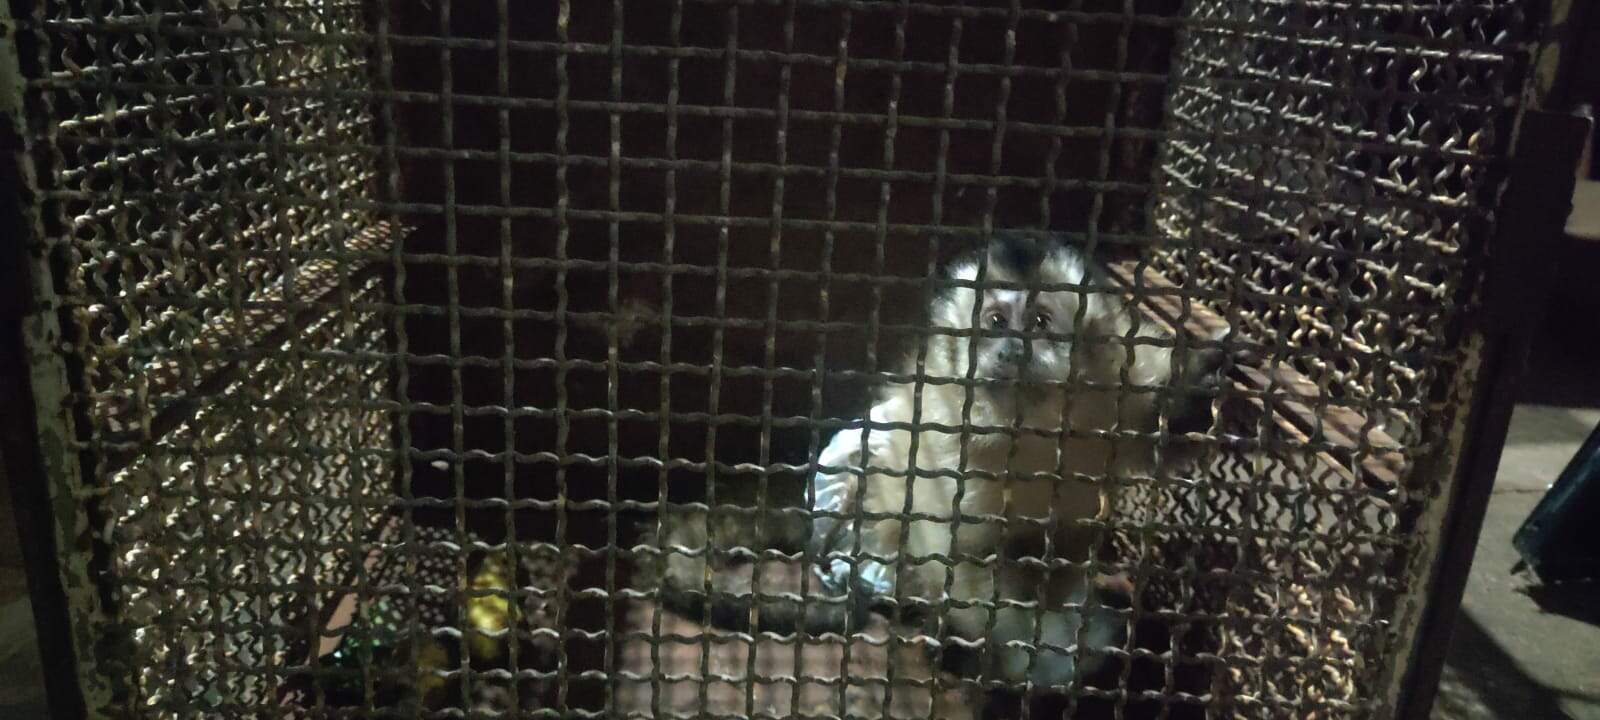 Macaco-prego é capturado em árvore, com corda presa ao corpo e usando fralda